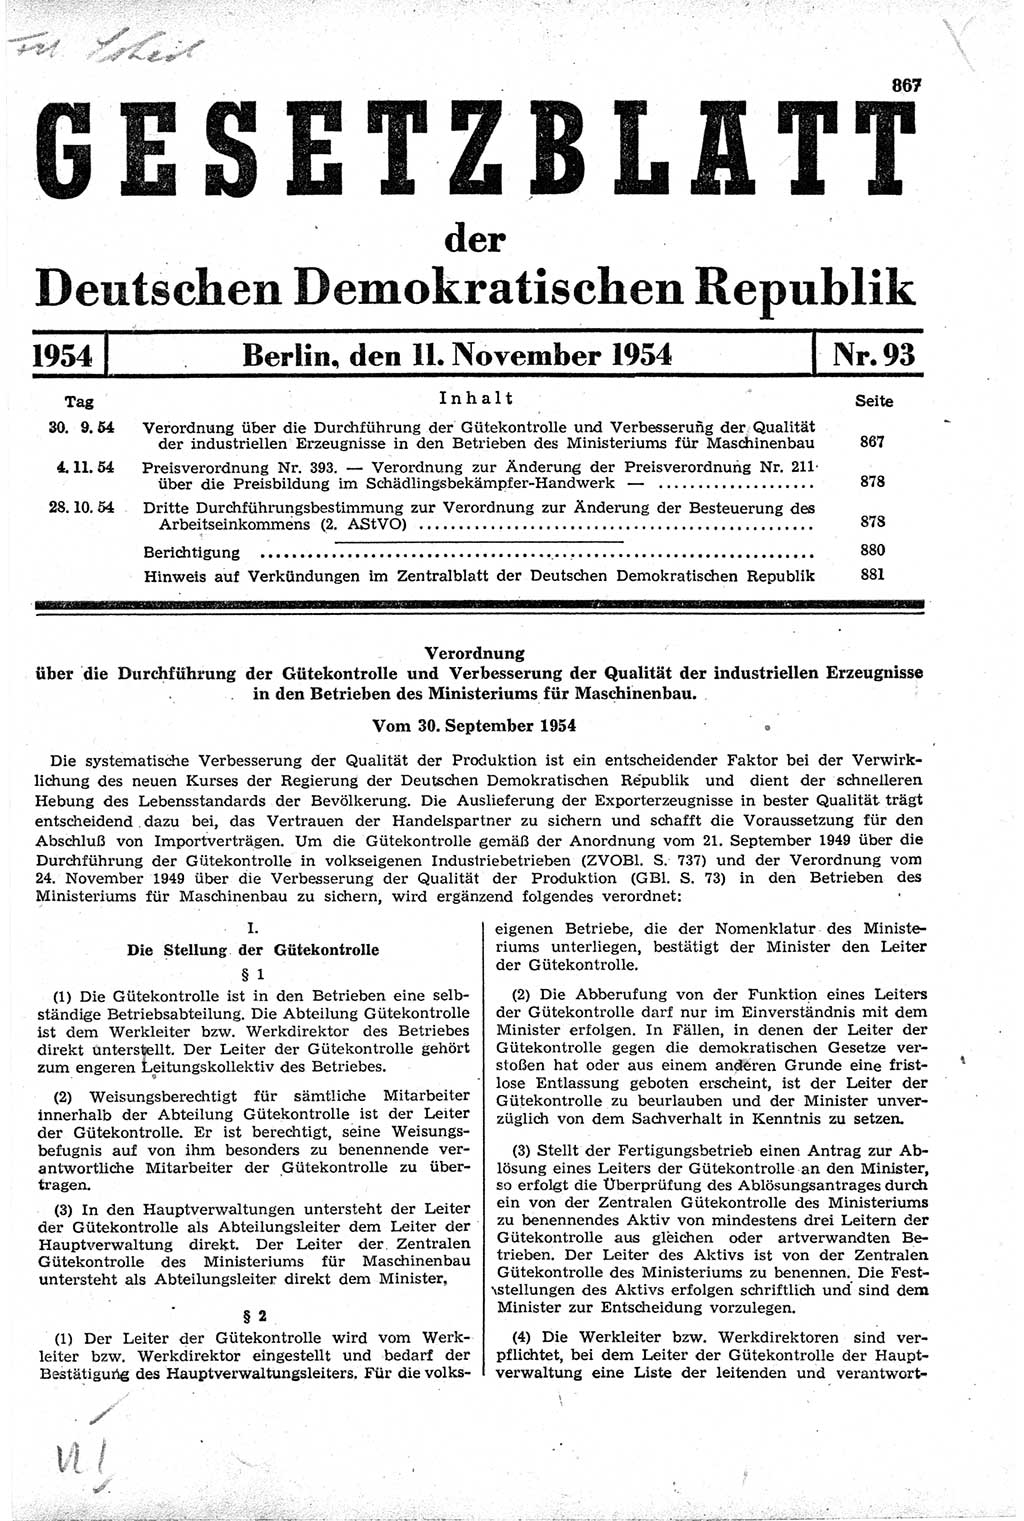 Gesetzblatt (GBl.) der Deutschen Demokratischen Republik (DDR) 1954, Seite 867 (GBl. DDR 1954, S. 867)